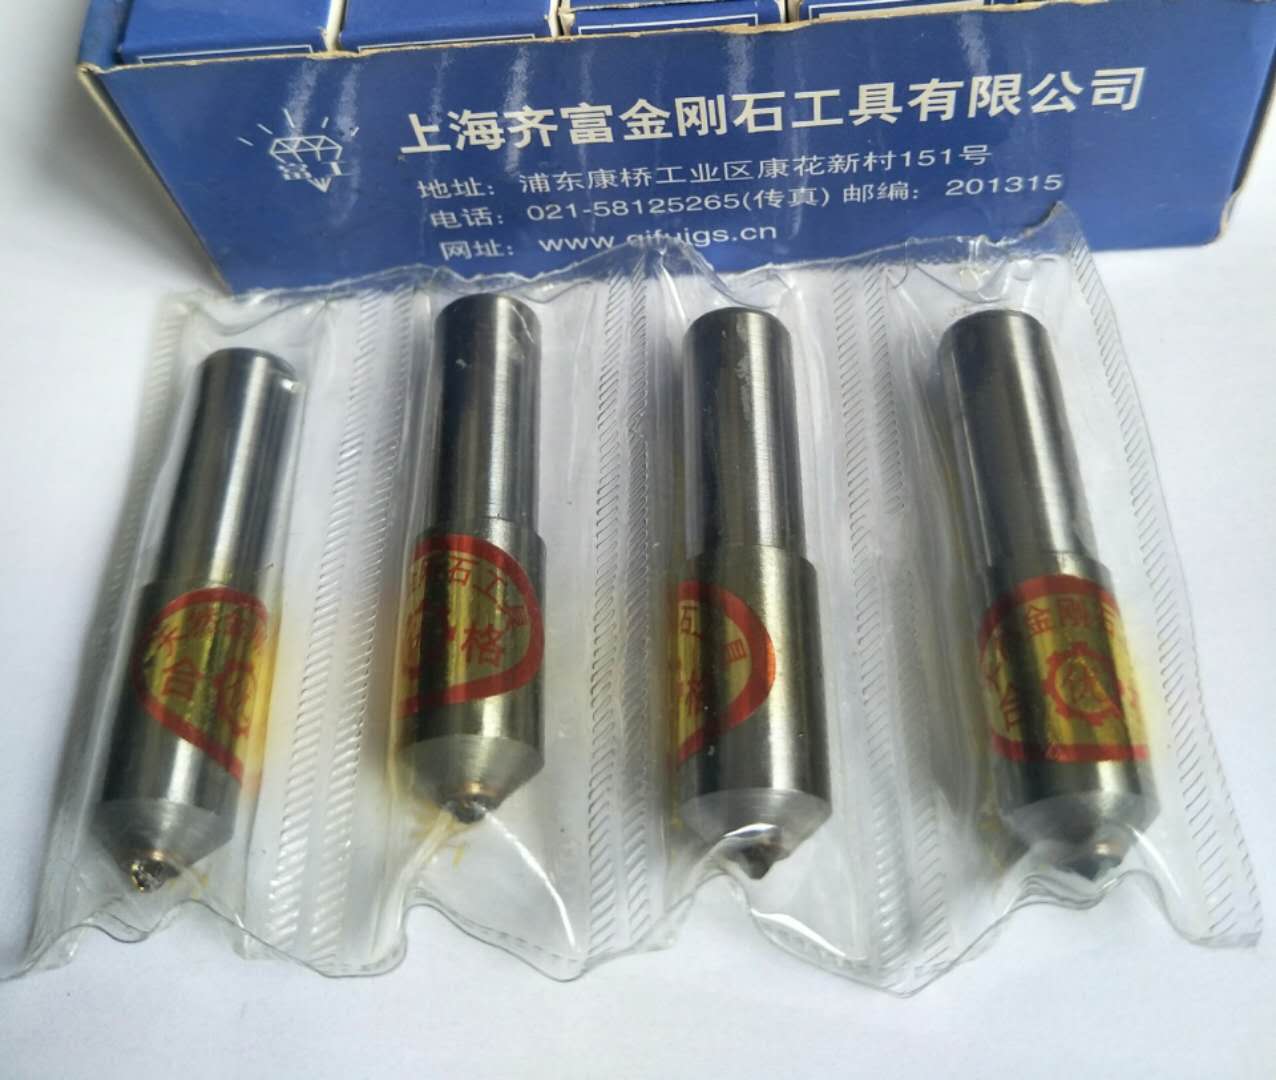 上海数控磨床特殊刀具厂家批发价供应报价哪里有多少钱图片